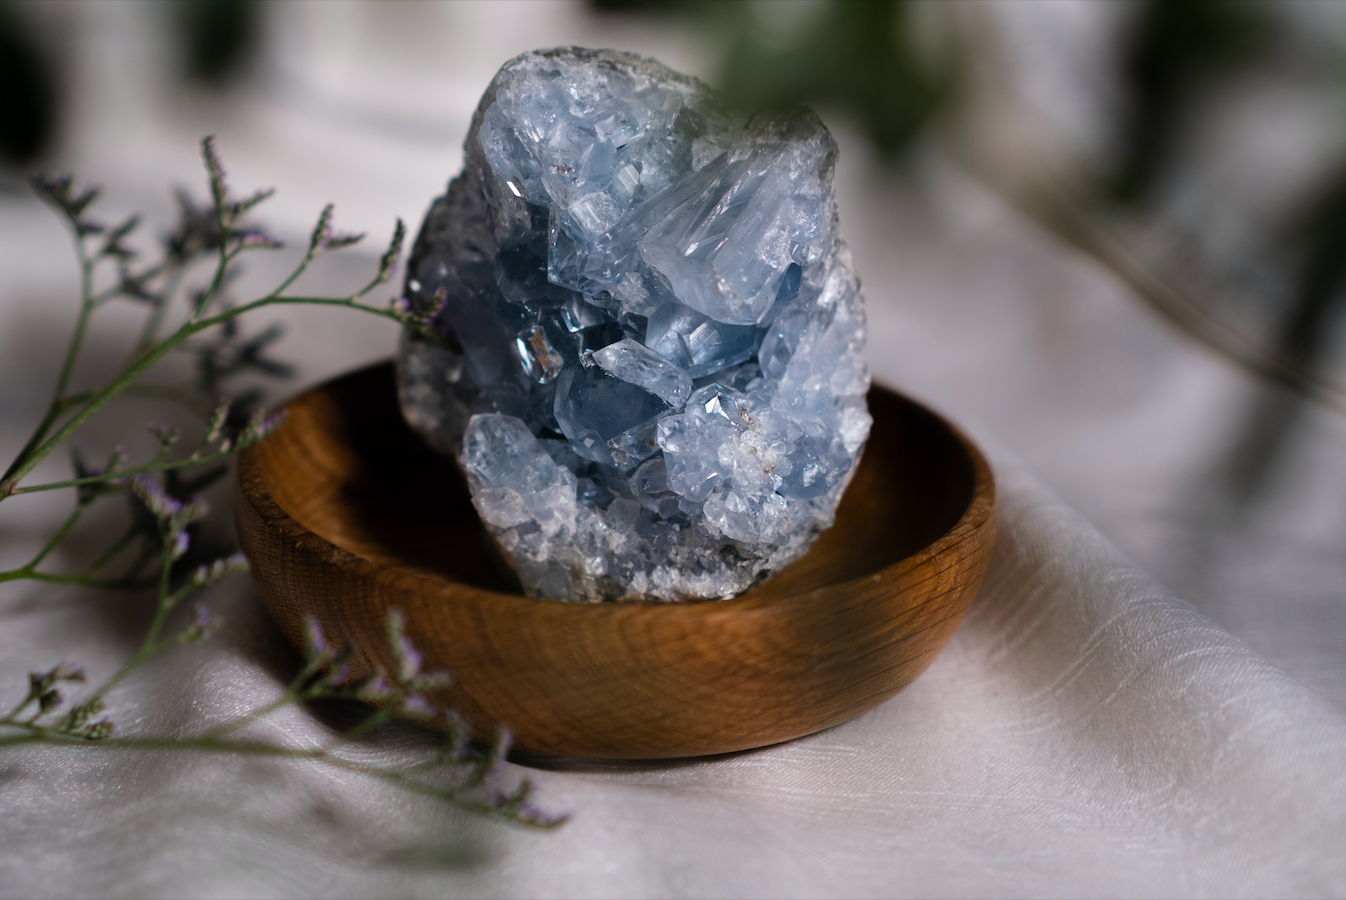 Comment bien purifier et recharger ces pierres & cristaux?